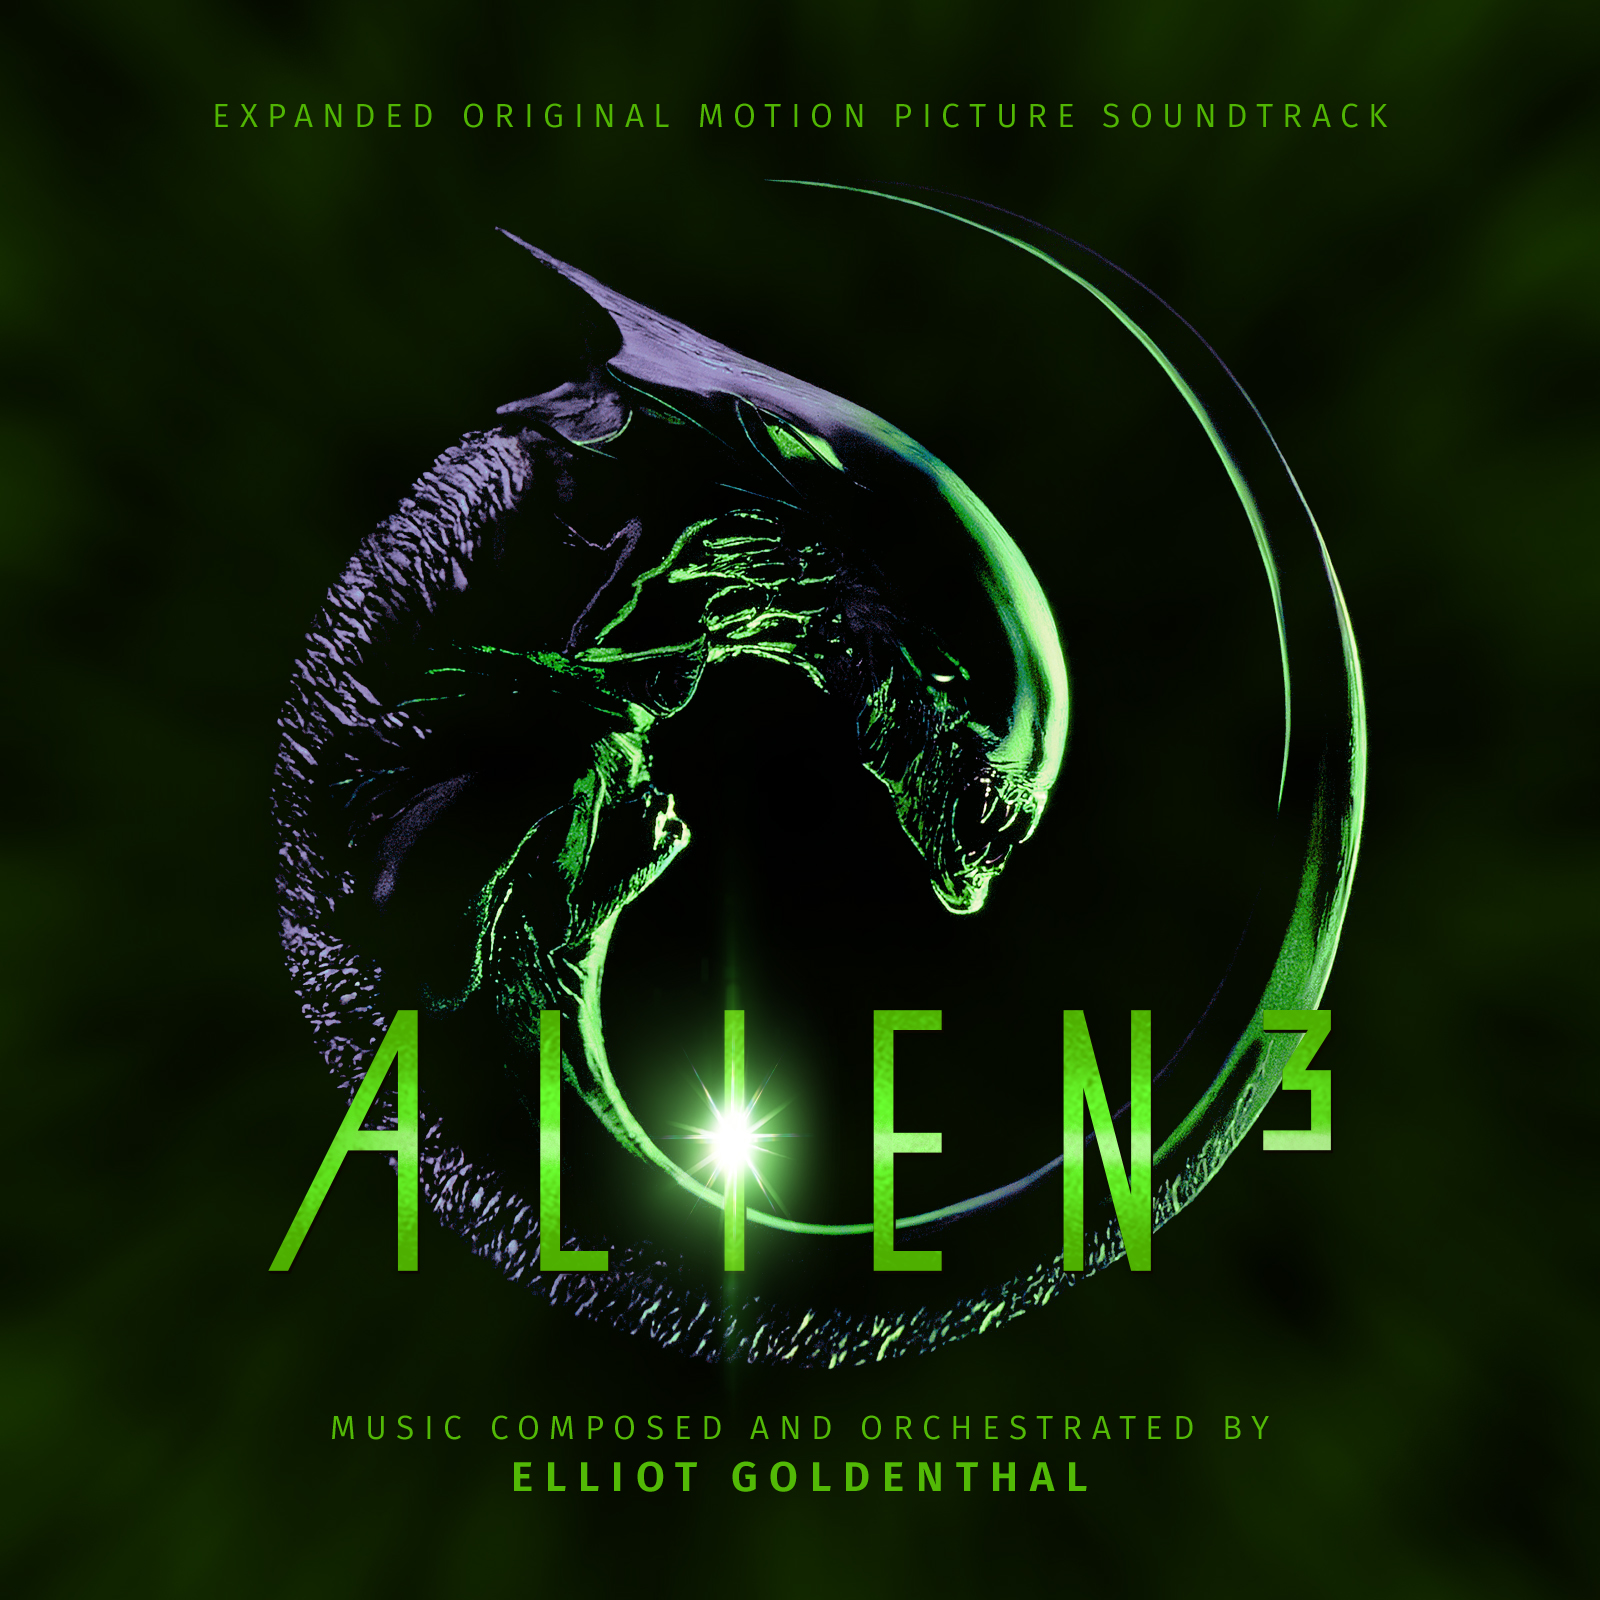 Alien 3 2-CD set